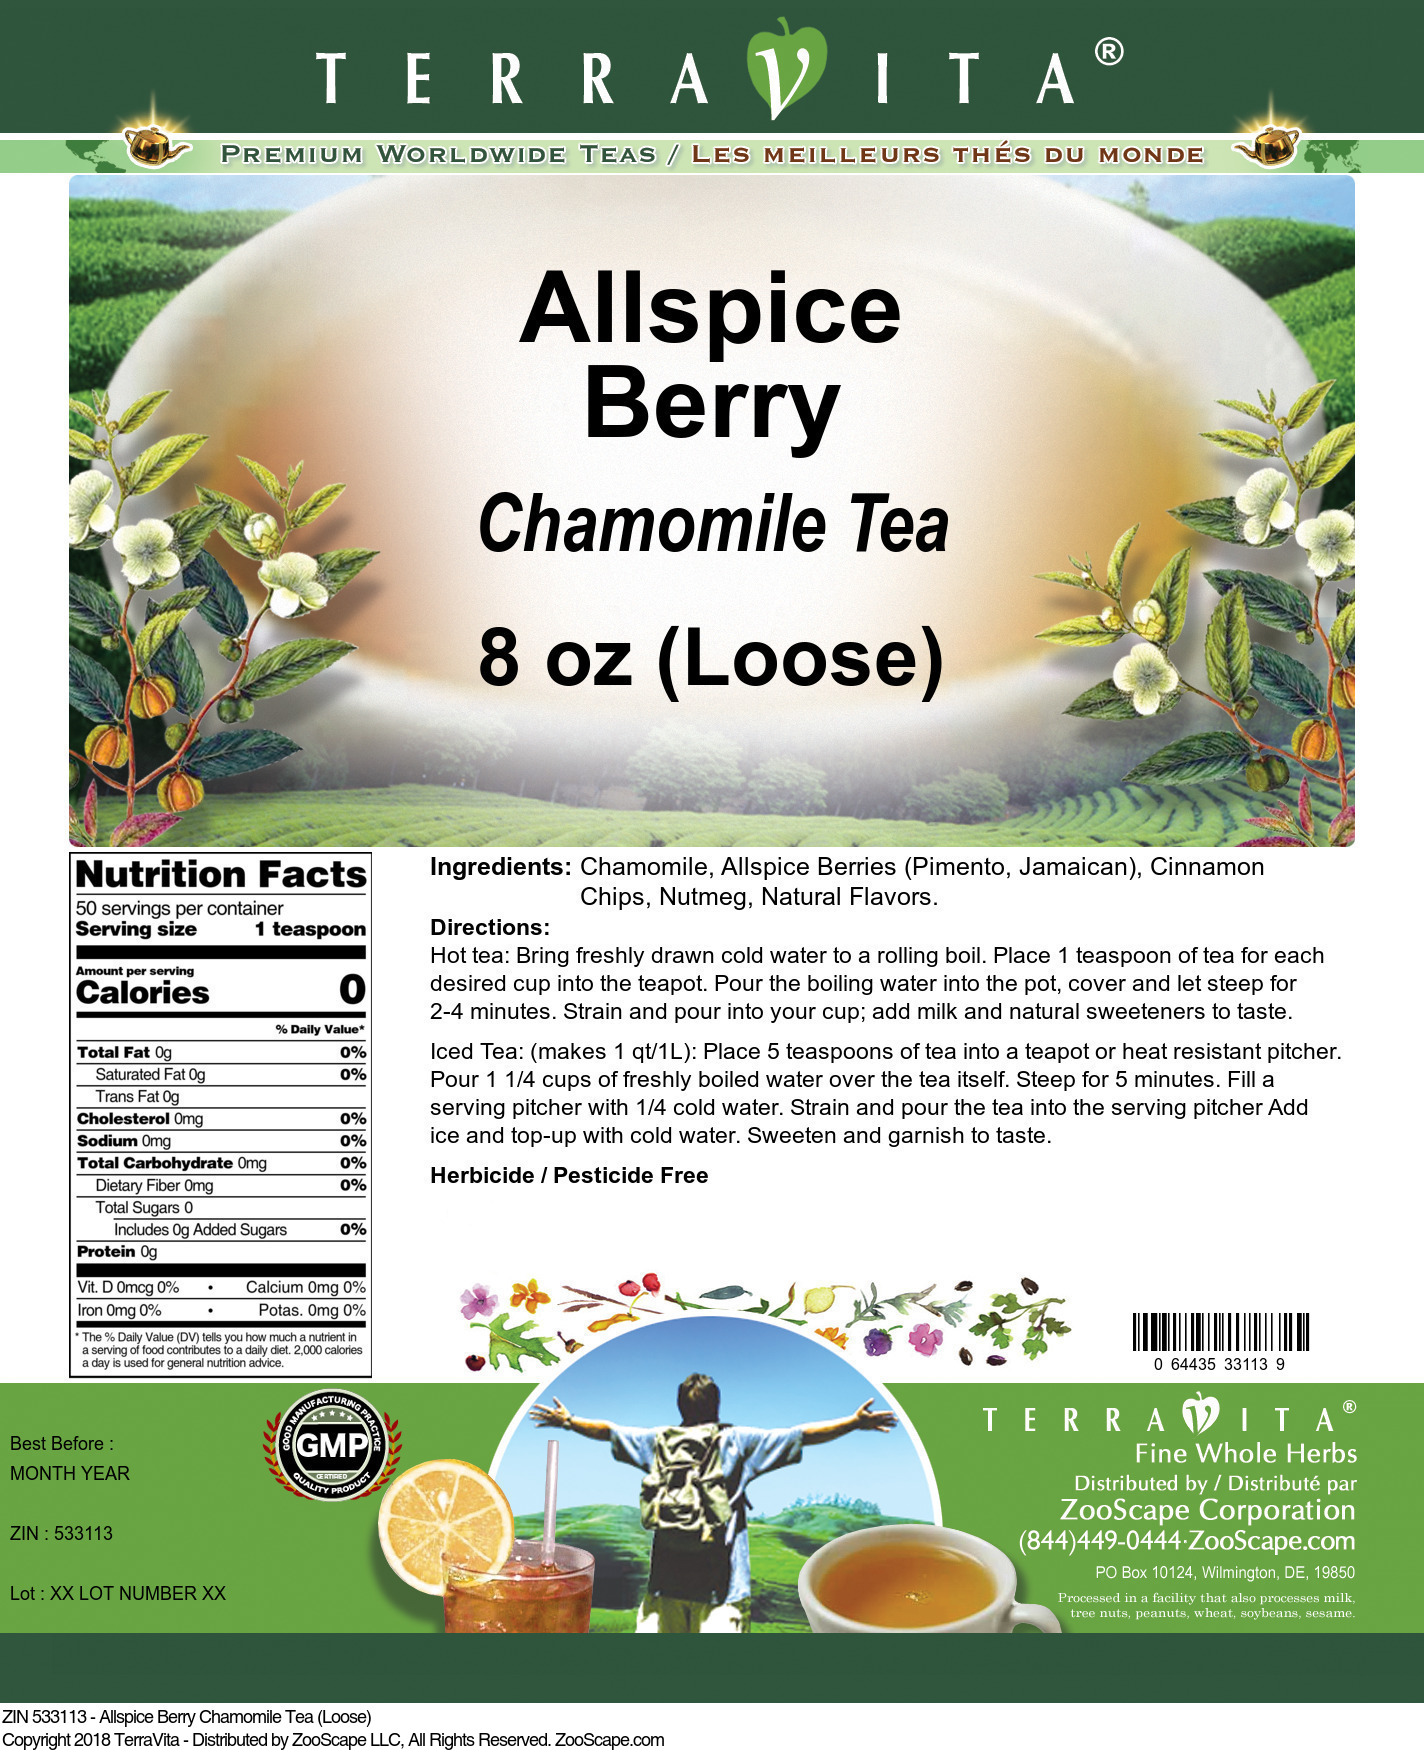 Allspice Berry Chamomile Tea (Loose) - Label